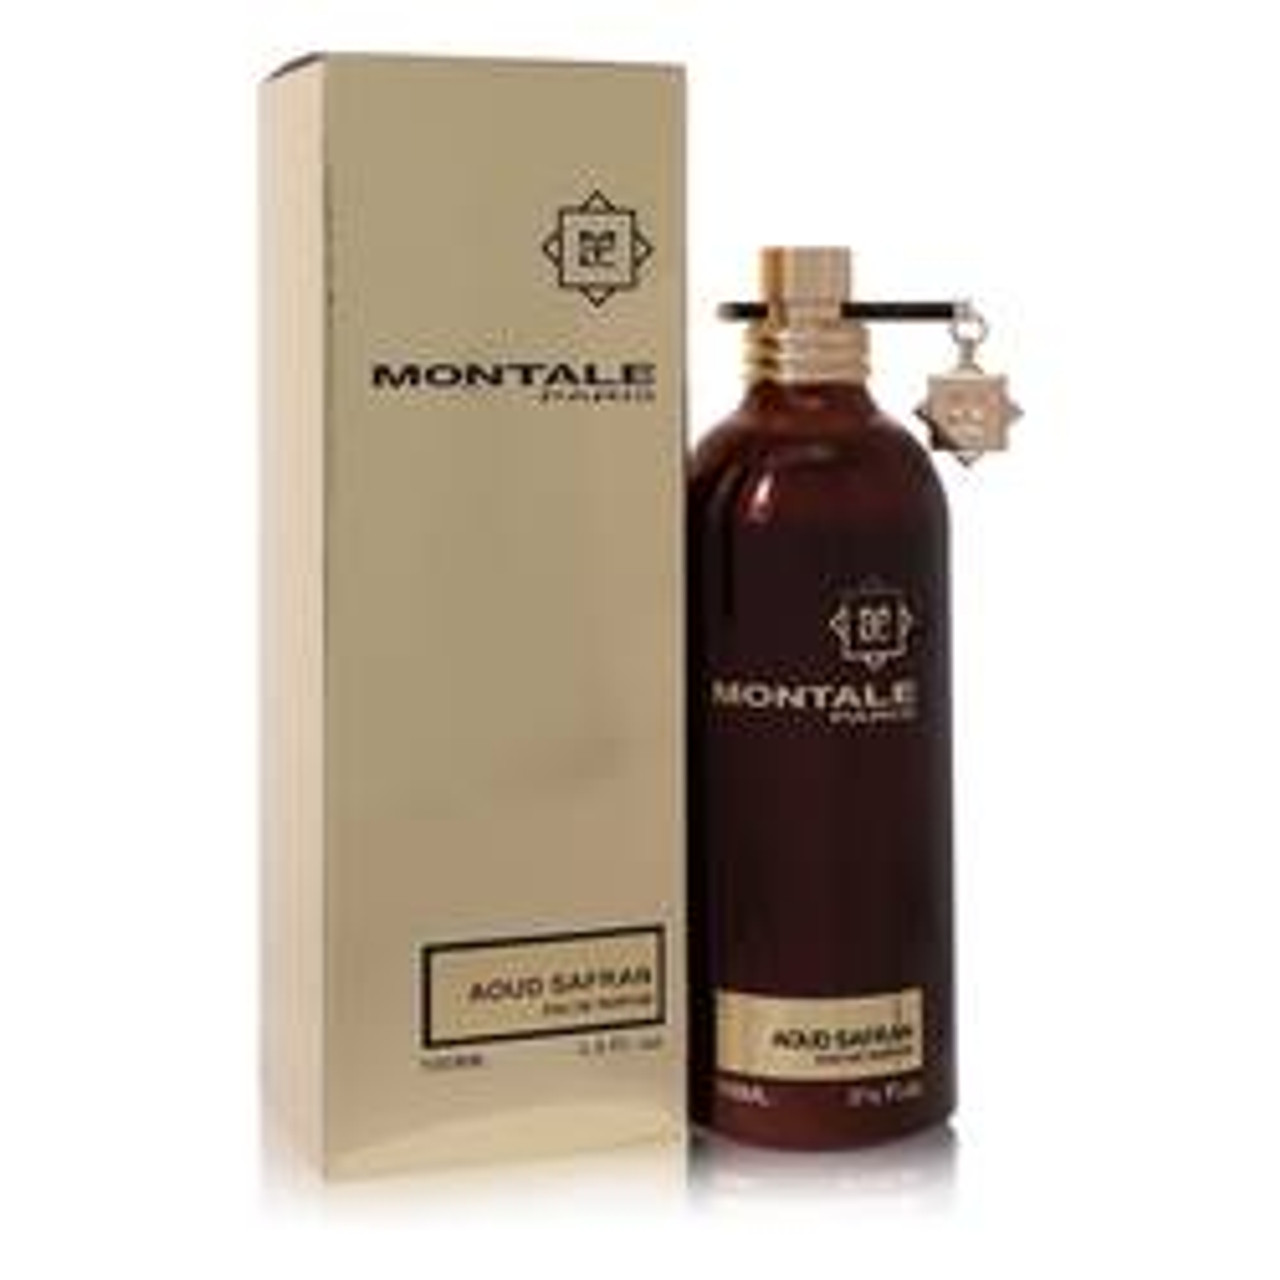 Montale Aoud Safran Perfume By Montale Eau De Parfum Spray 3.4 oz for Women - *Pre-Order